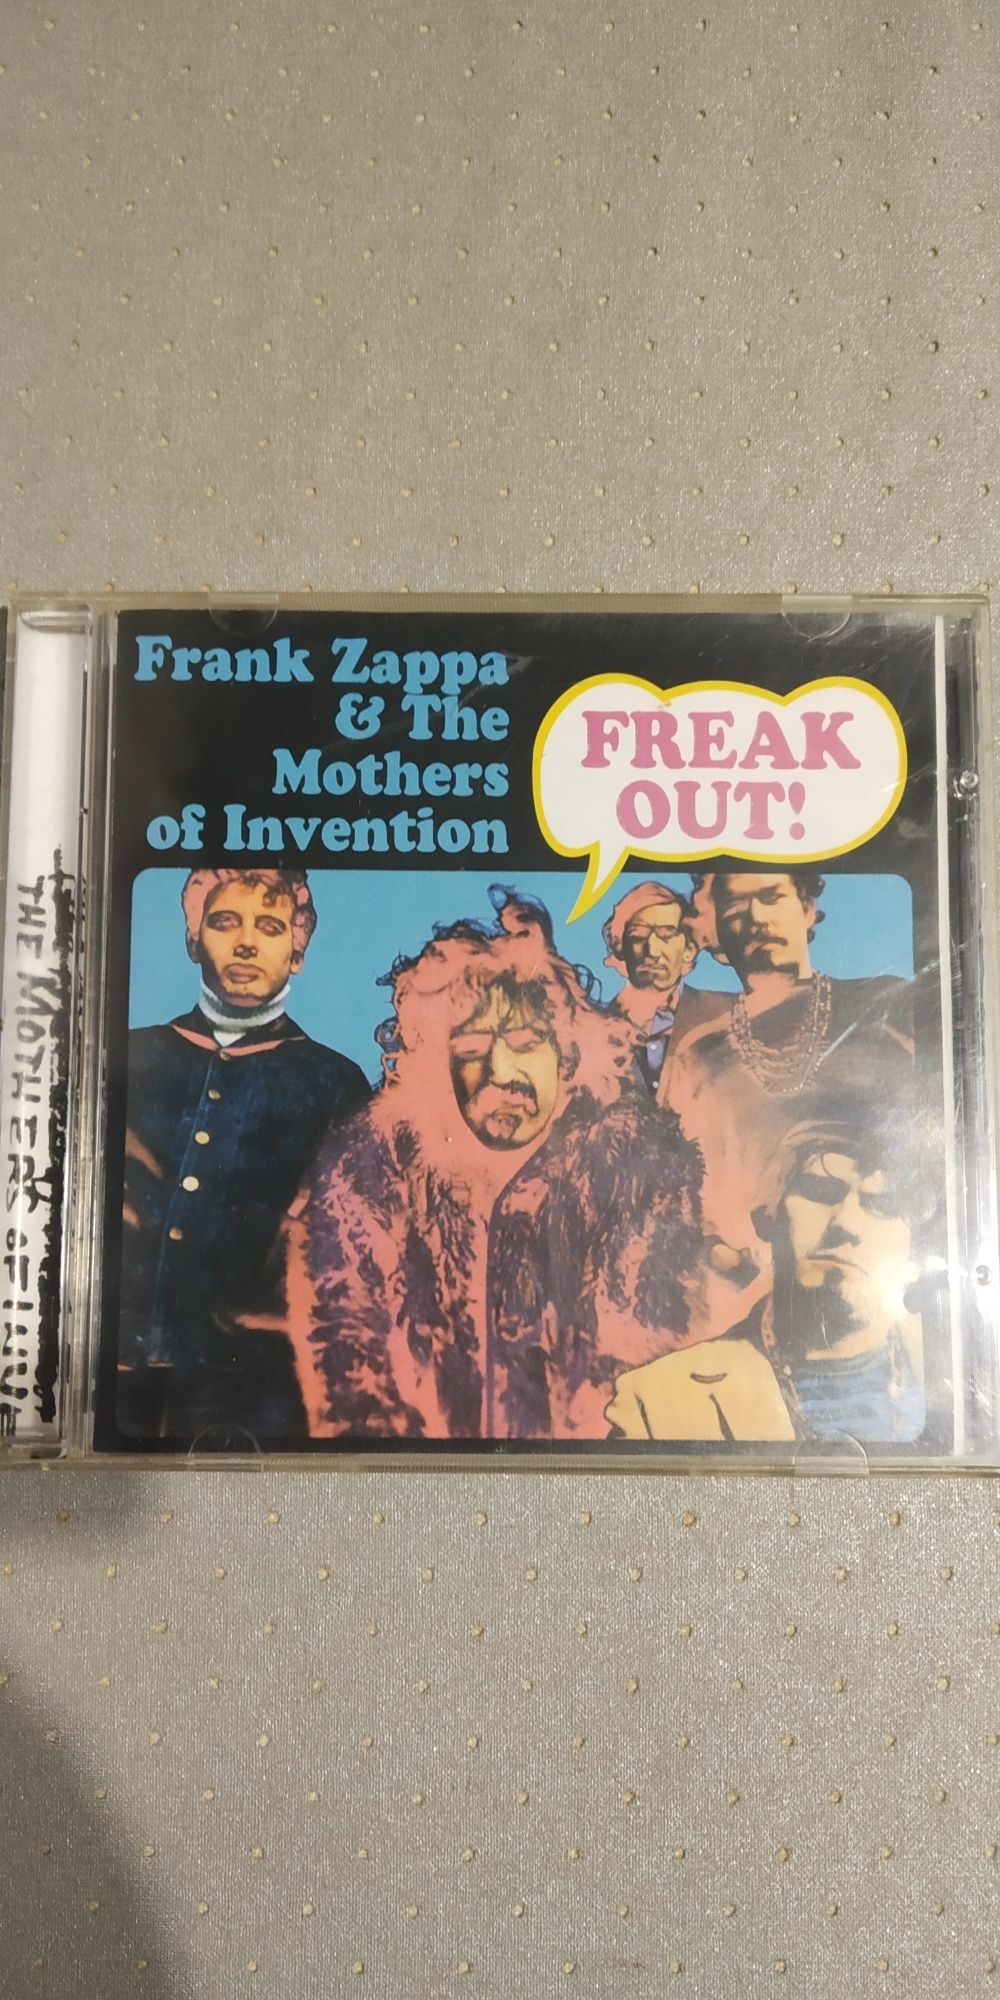 CD Frank Zappa " Freak out"